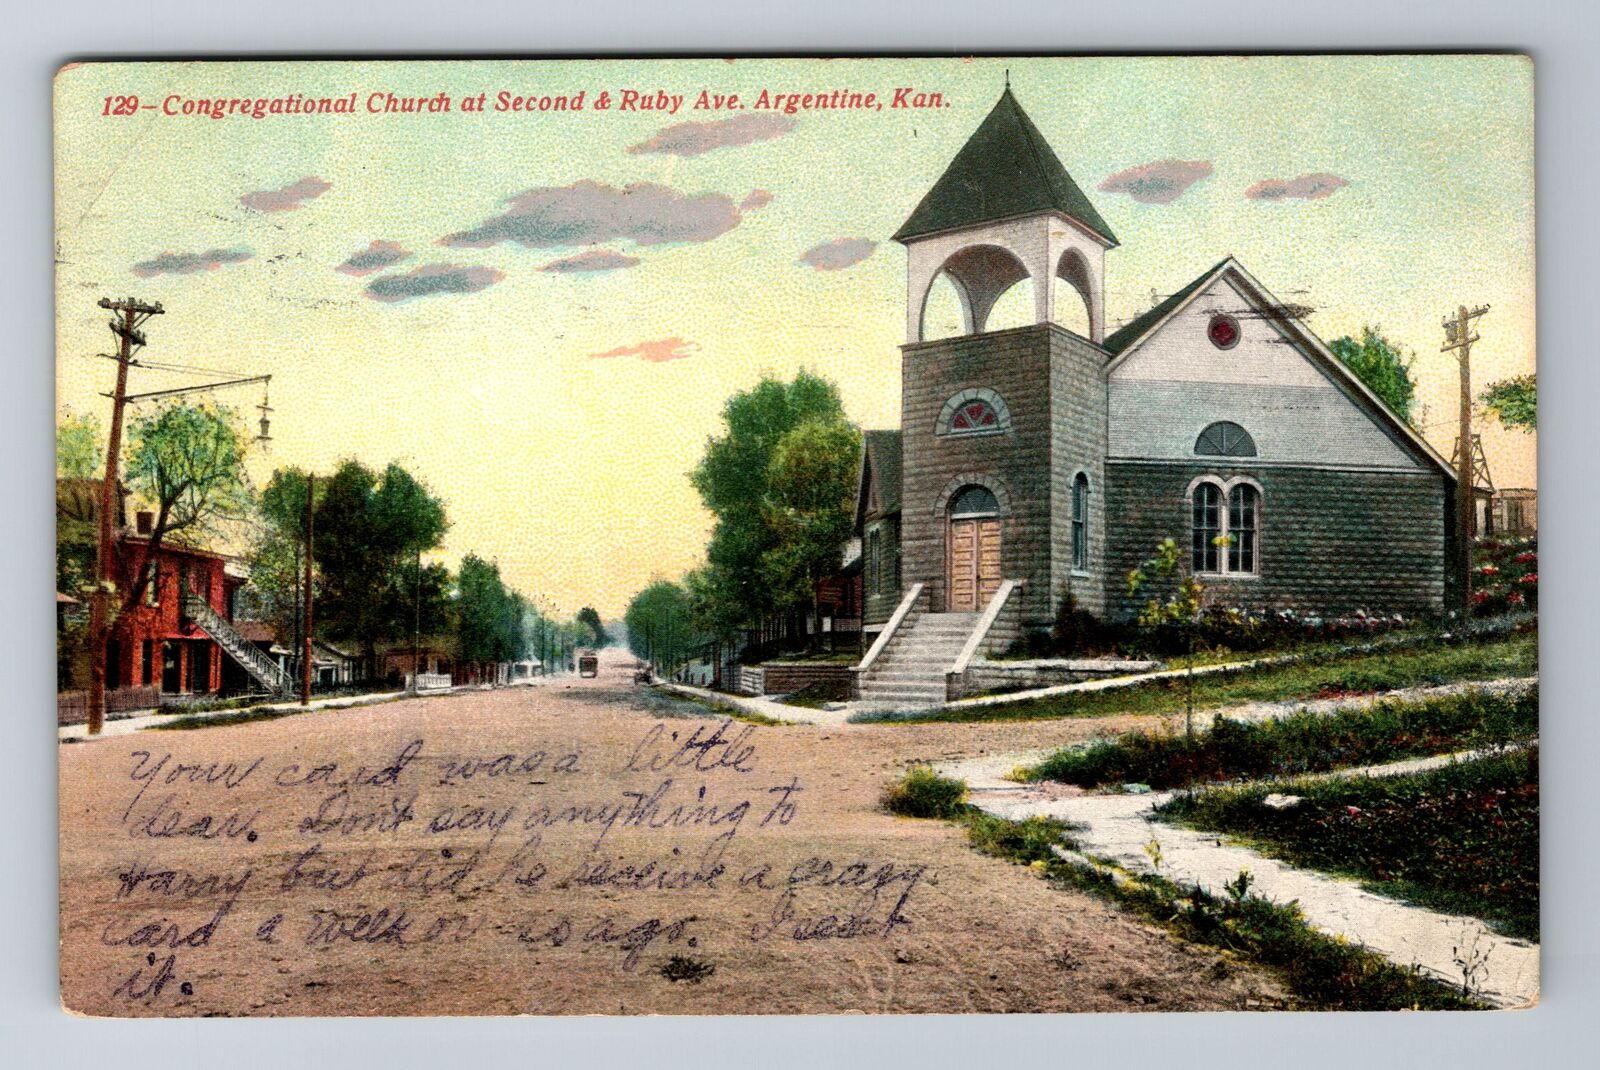 Argentine KS-Kansas, Congregational Church, Antique Vintage c1914 Postcard